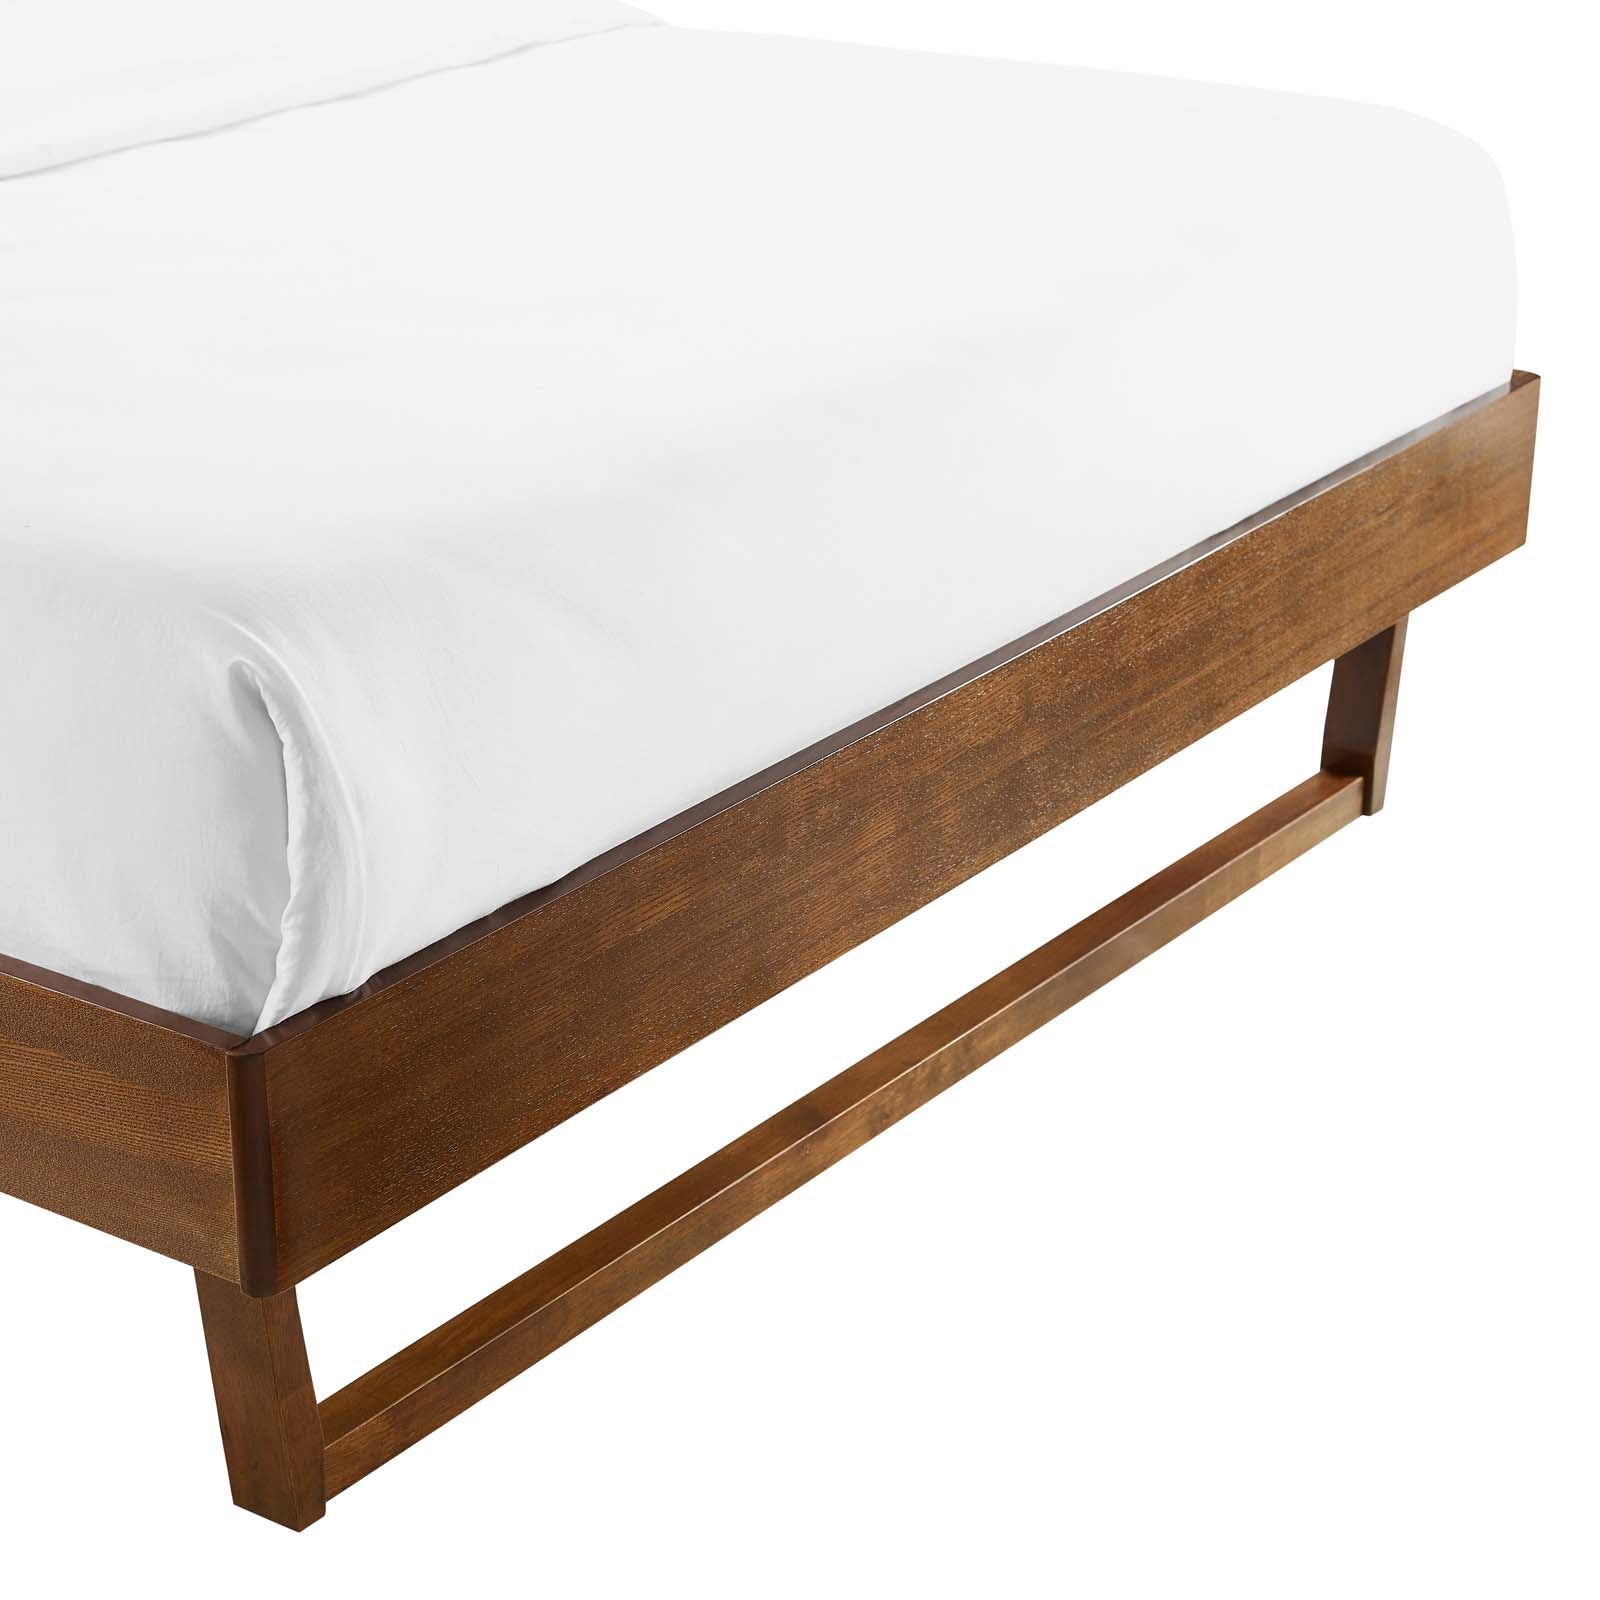 Modway Beds - Billie Full Wood Platform Bed Frame Walnut